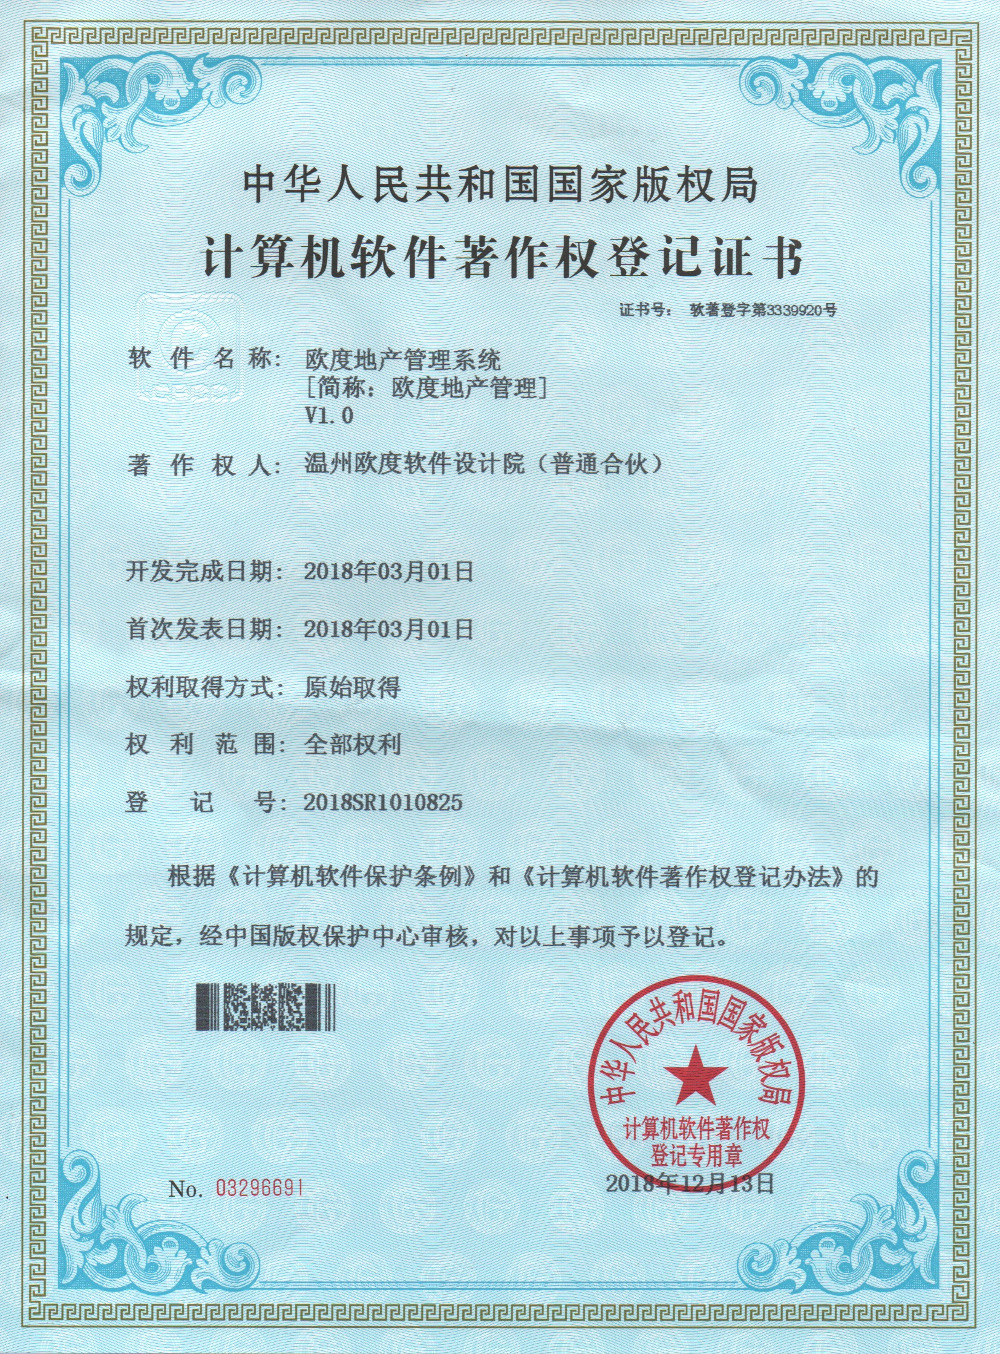 欧度地产管理系统计算机软件著作权登记证书